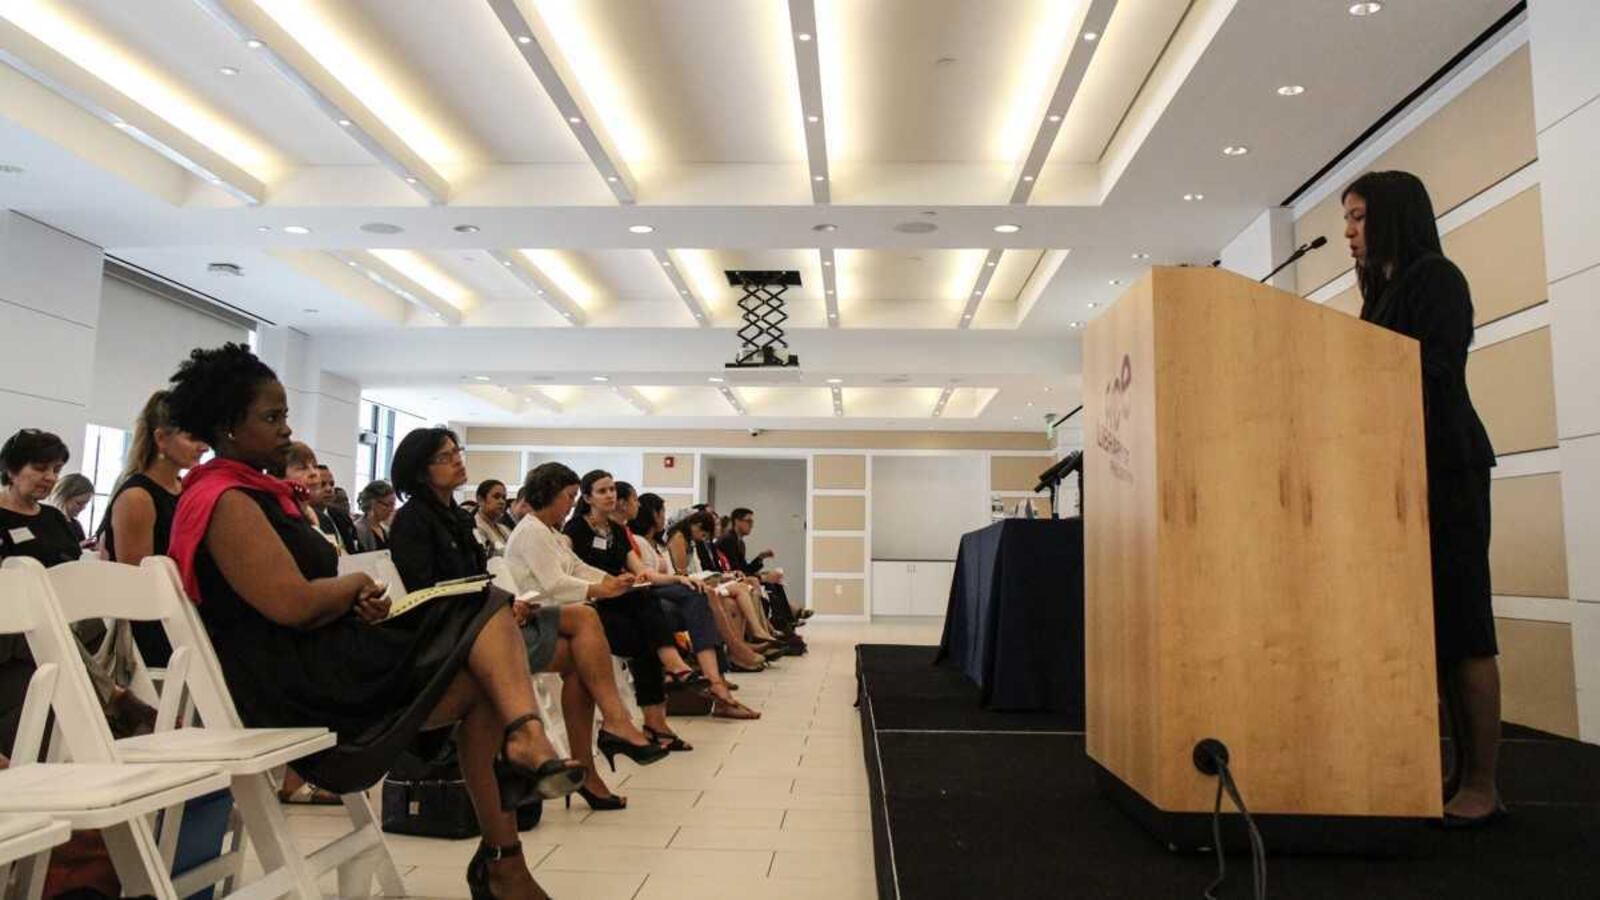 Kristine Alvarez speaking at a podium.